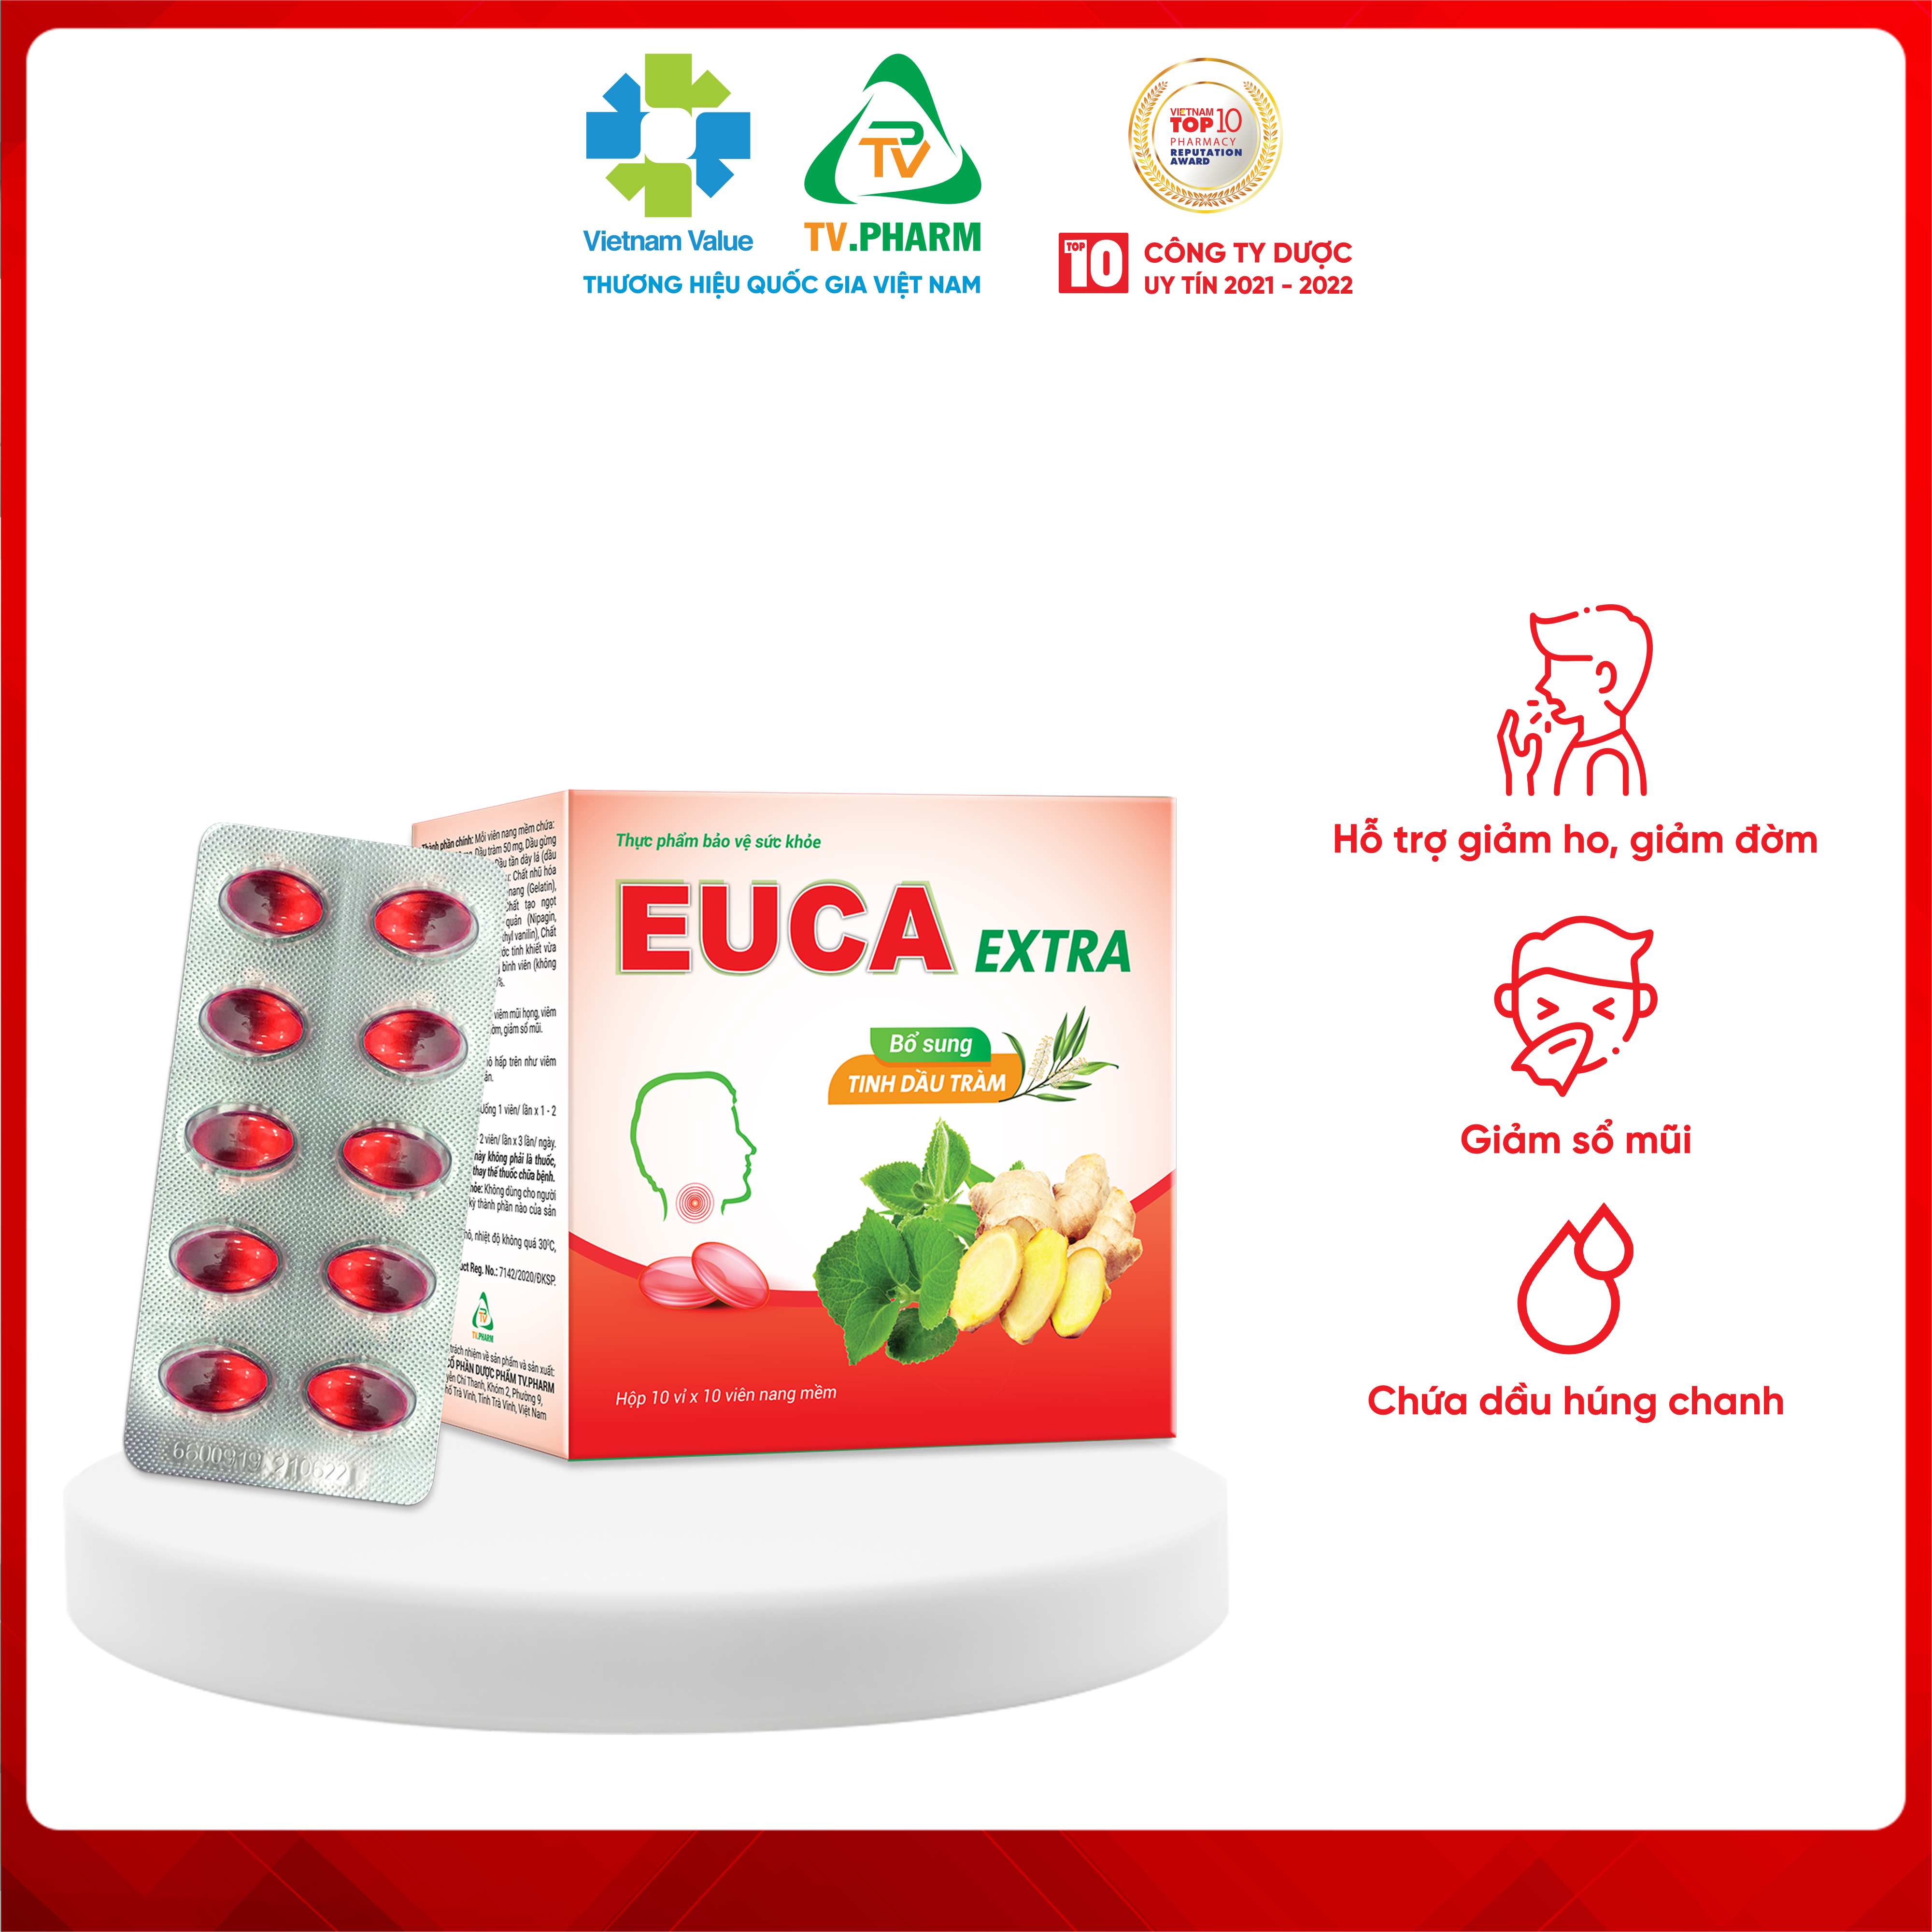 Thực phẩm bảo vệ sức khỏe EUCA EXTRA - Hỗ trợ giảm ho, giảm đờm